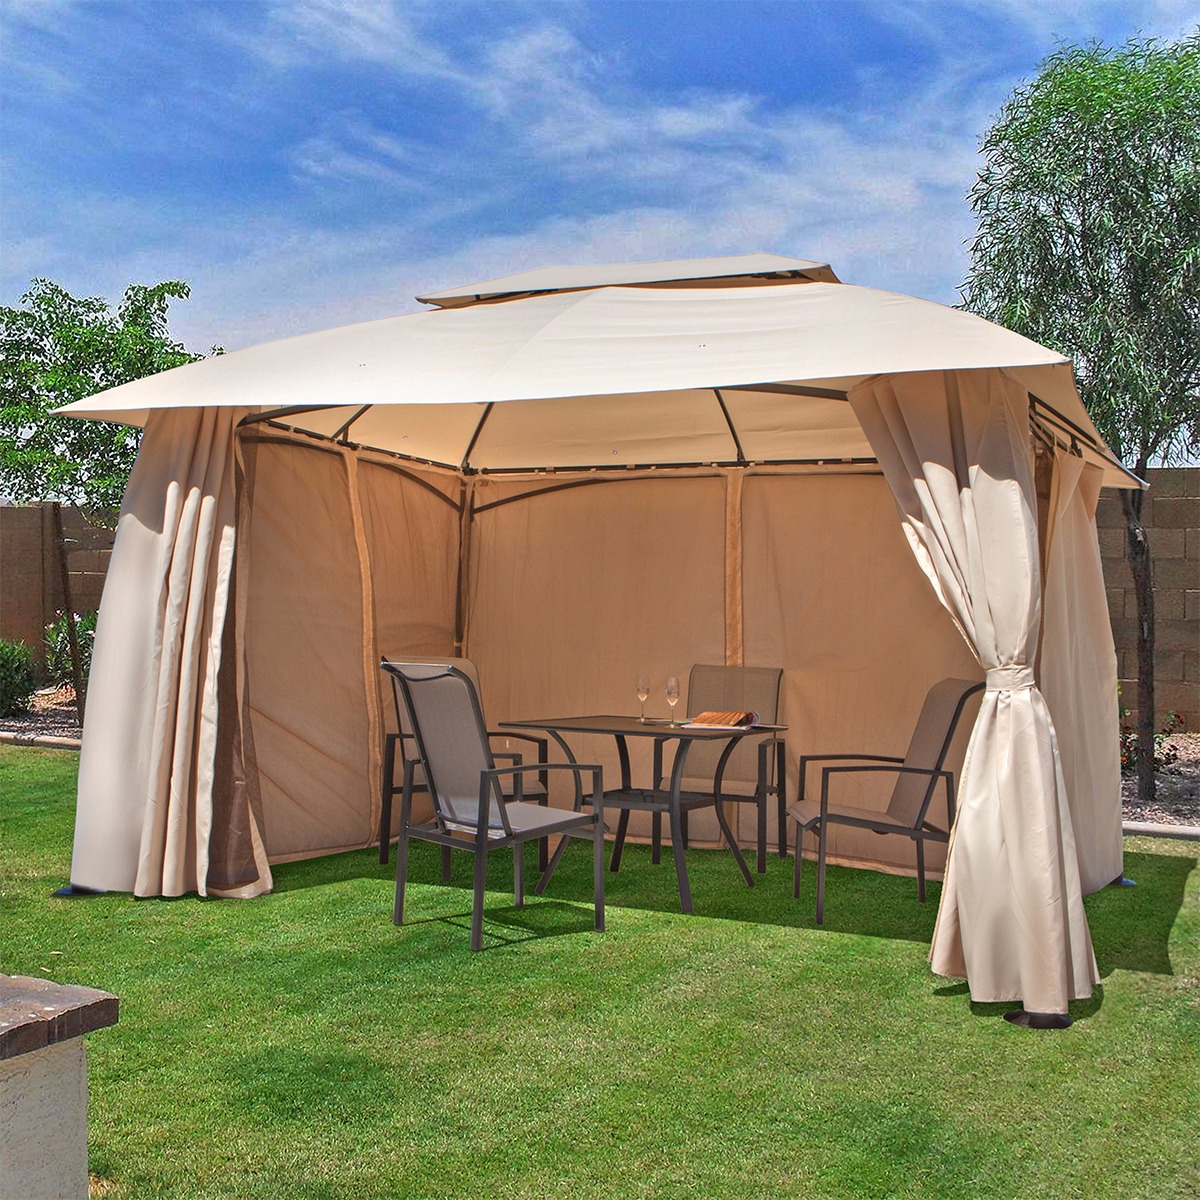 outdoor canopy tent outdoor home 10u0027 x 13u0027 backyard garden awnings patio gazebo canopy tent WZATEDY